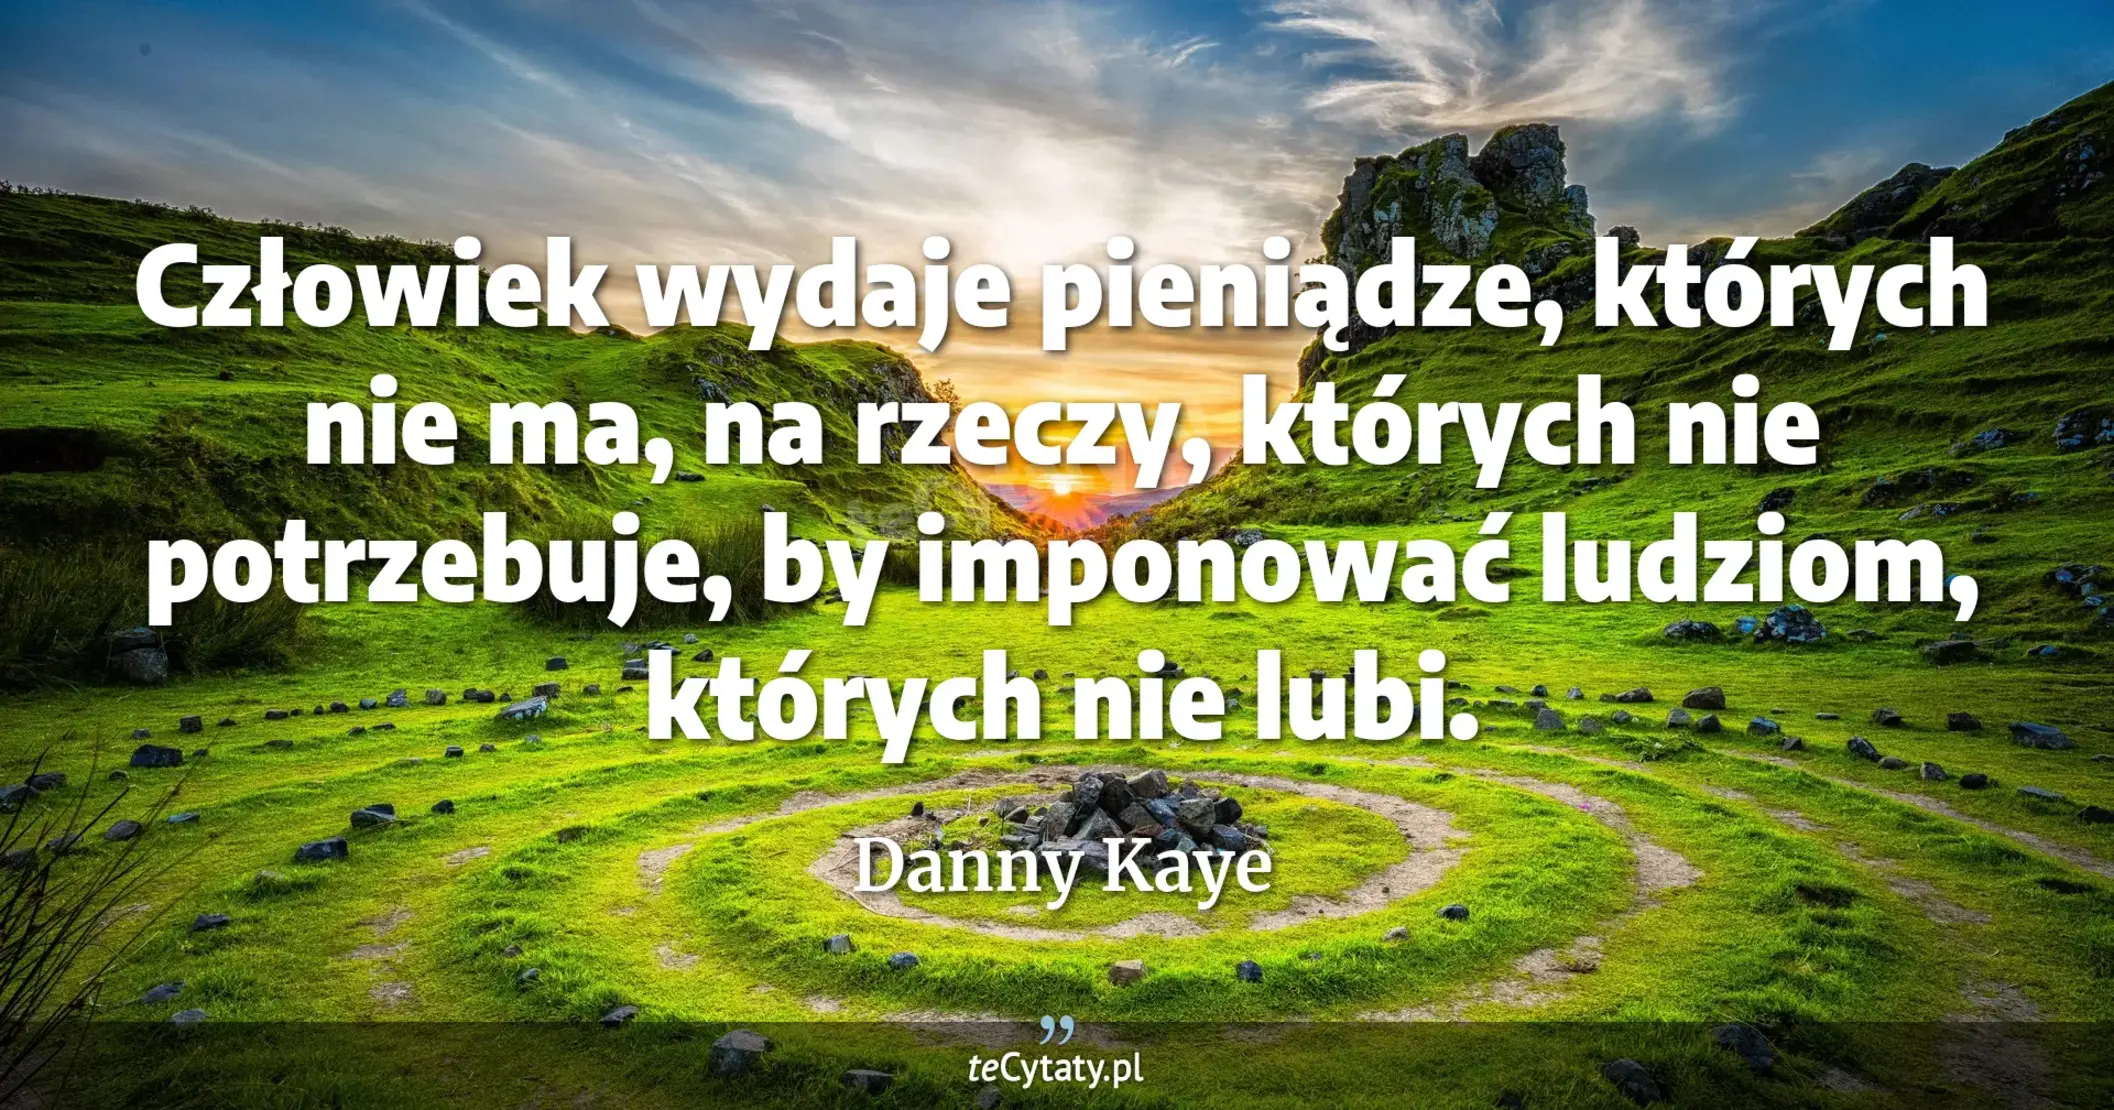 Człowiek wydaje pieniądze, których nie ma, na rzeczy, których nie potrzebuje, by imponować ludziom, których nie lubi. - Danny Kaye